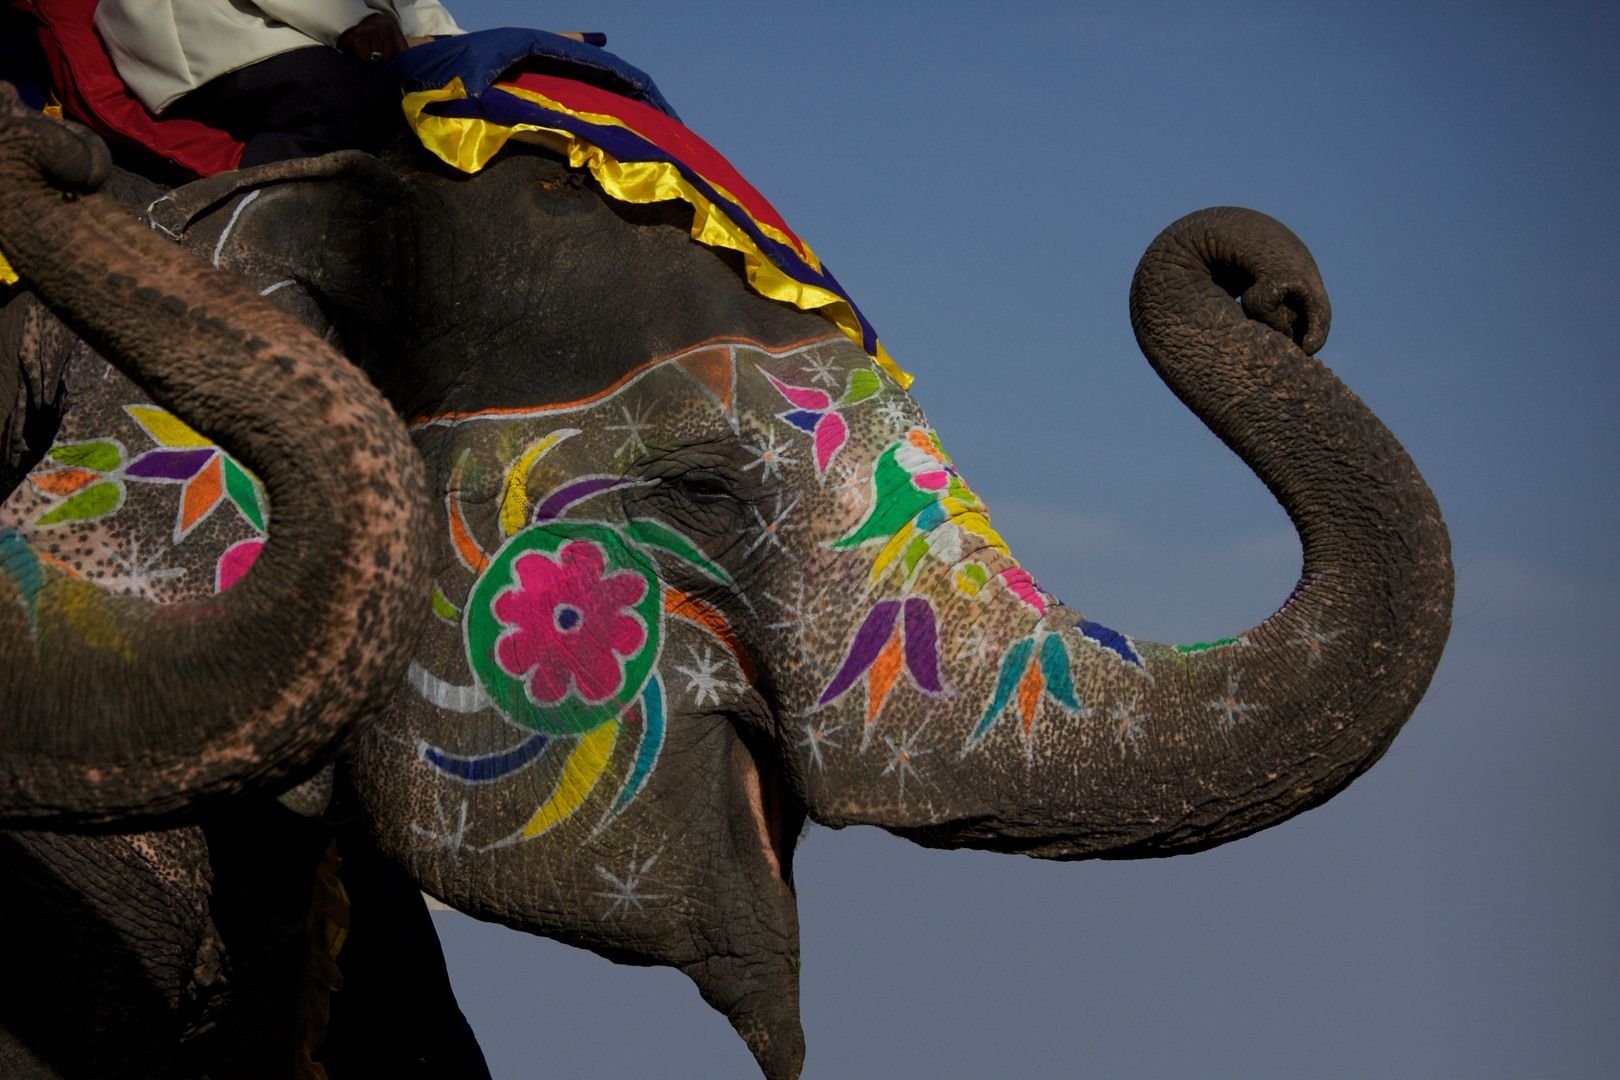 Индийские слоны живут. Индийский слон в Индии. Фестиваль слонов в Индии. Индийский слон индийский слон. Фестиваль слонов — Джайпур, Индия.